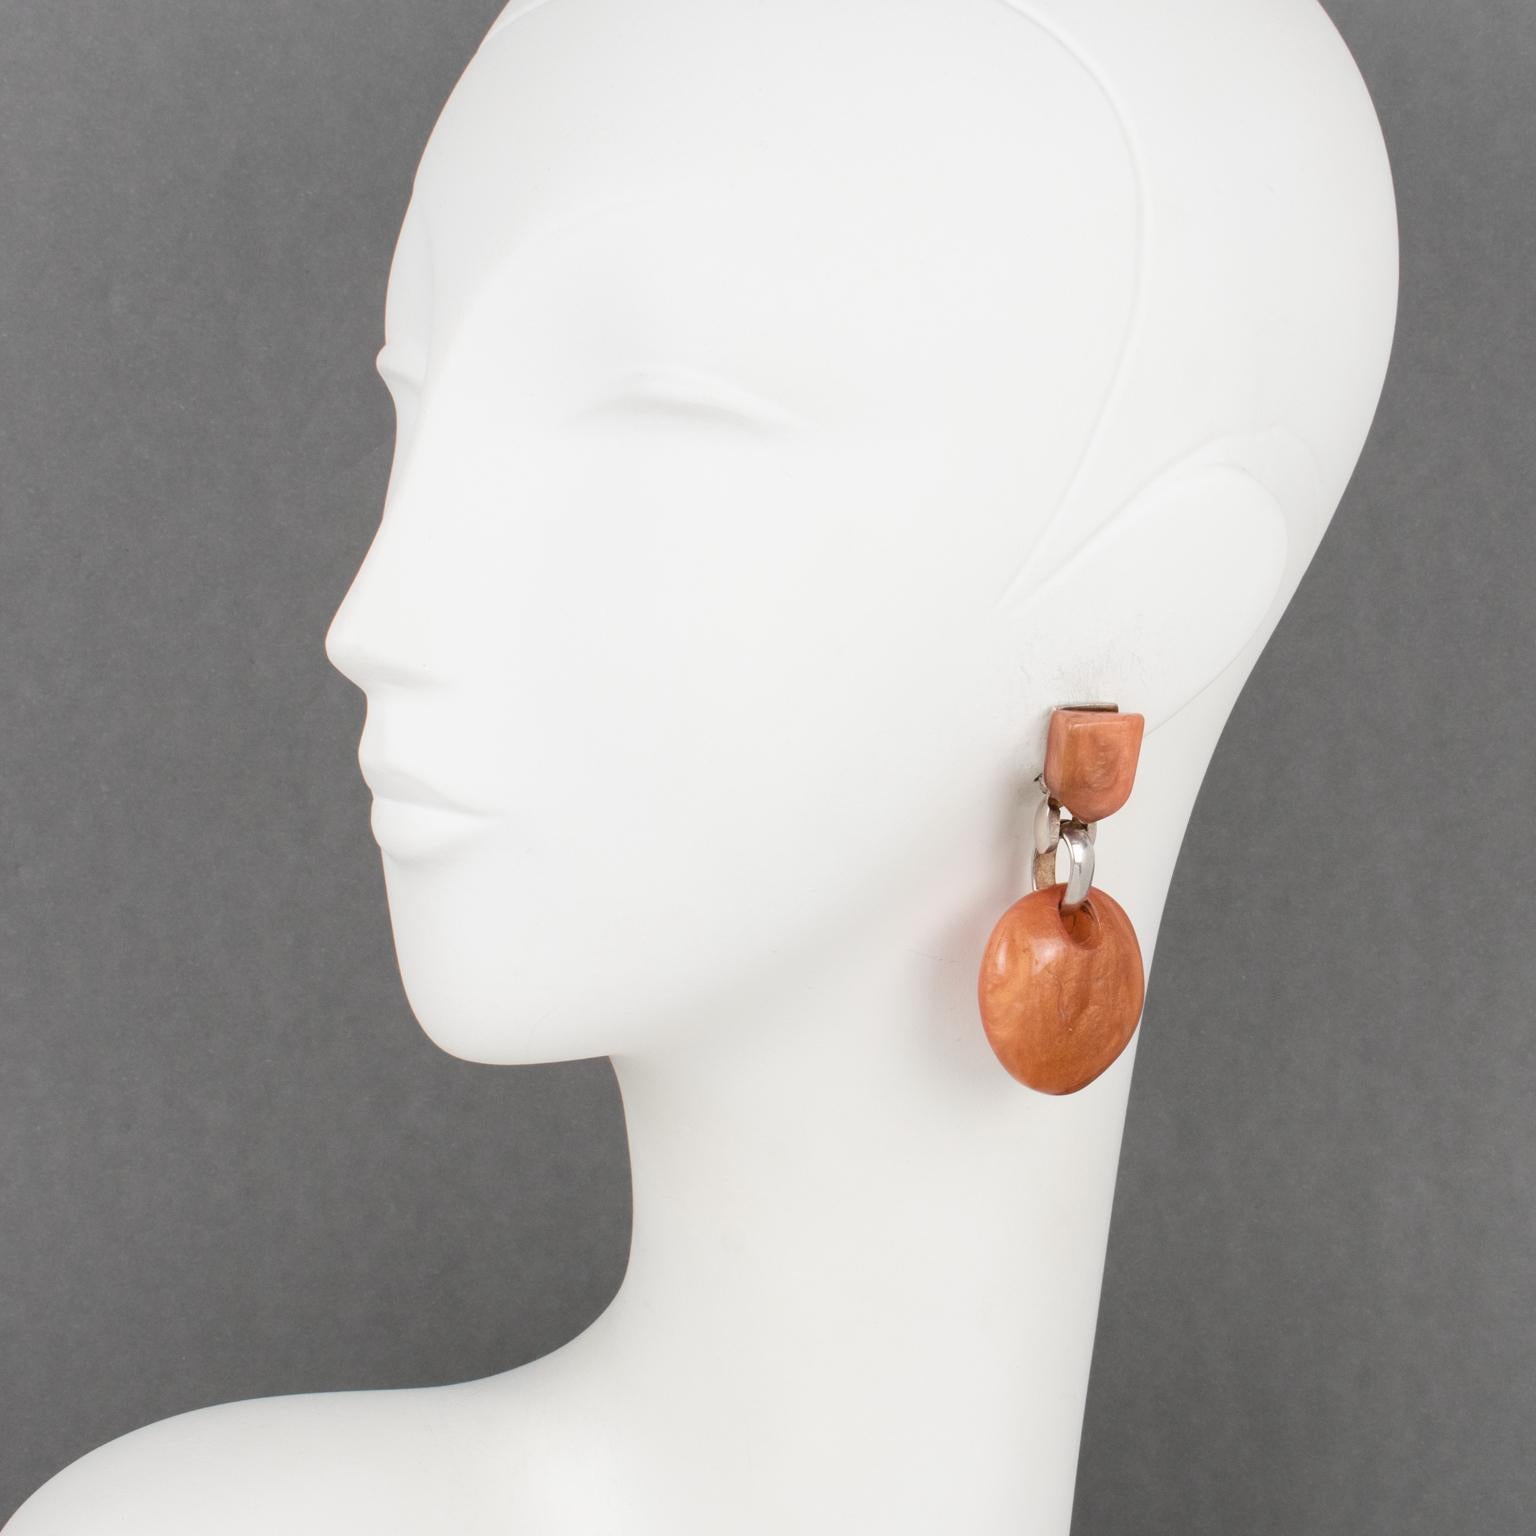 Dominique Denaive Paris hat diese eleganten Ohrringe in seinem Handwerksbetrieb in Frankreich hergestellt. Die Stücke haben die Form eines baumelnden Tropfens aus perlmuttartigem Harz mit abgerundeten Kieselsteinen in einer schönen orangefarbenen